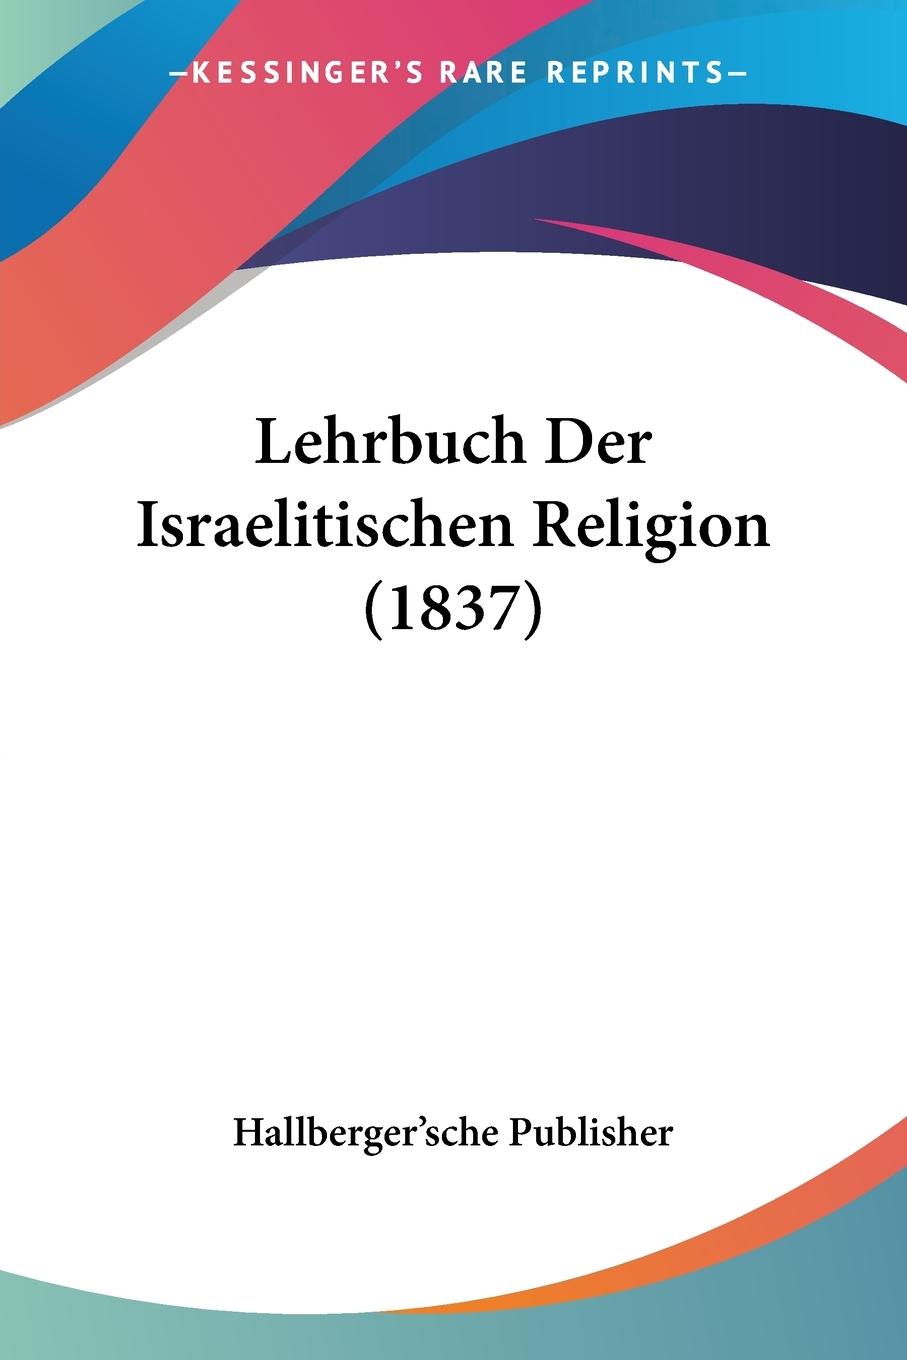 Lehrbuch Der Israelitischen Religion (1837) - Hallberger sche Publisher